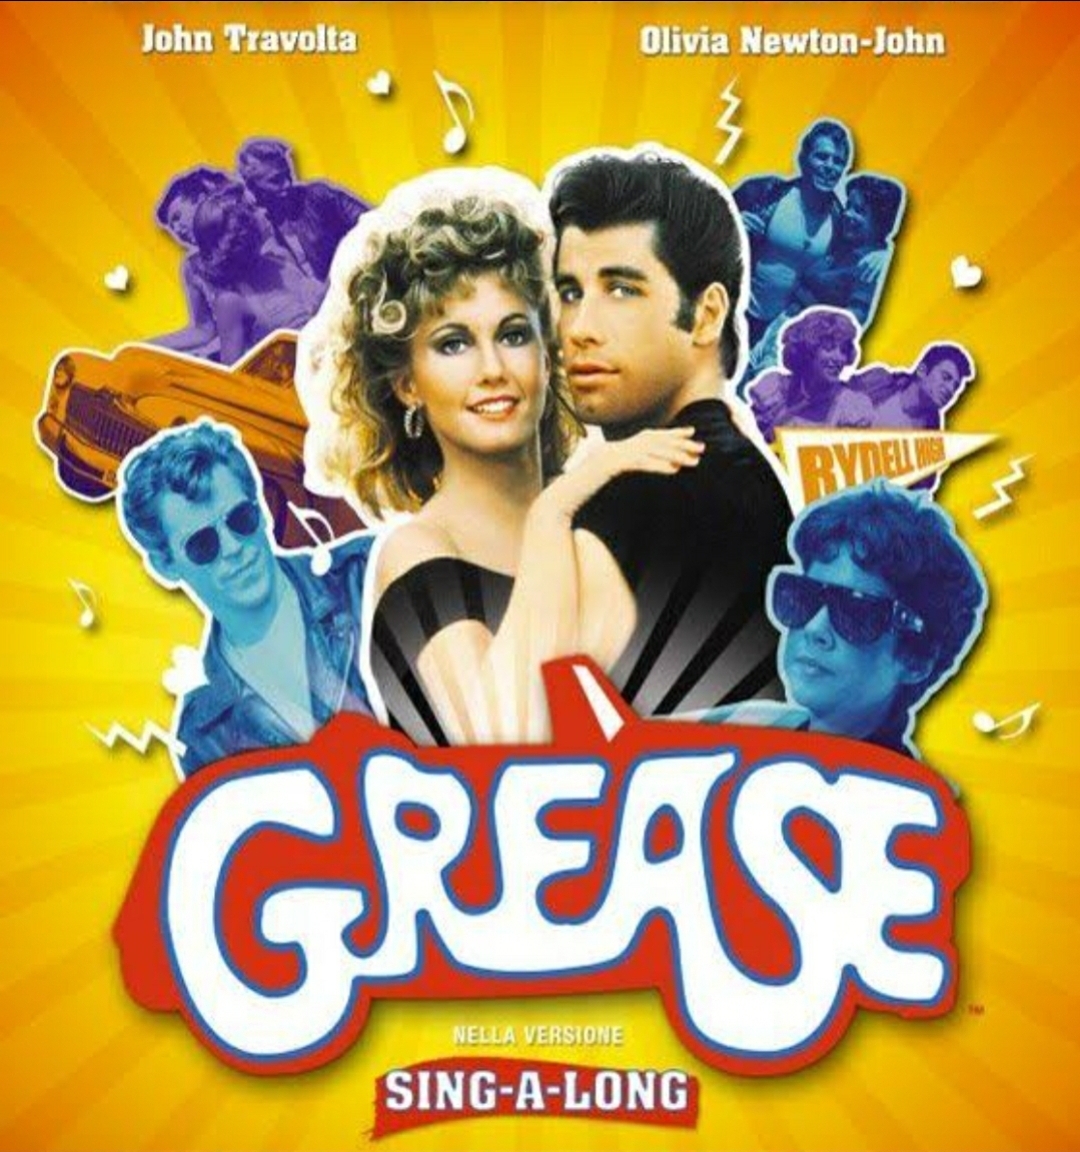 La terza puntata di “We Love Movies” sul film “Grease”